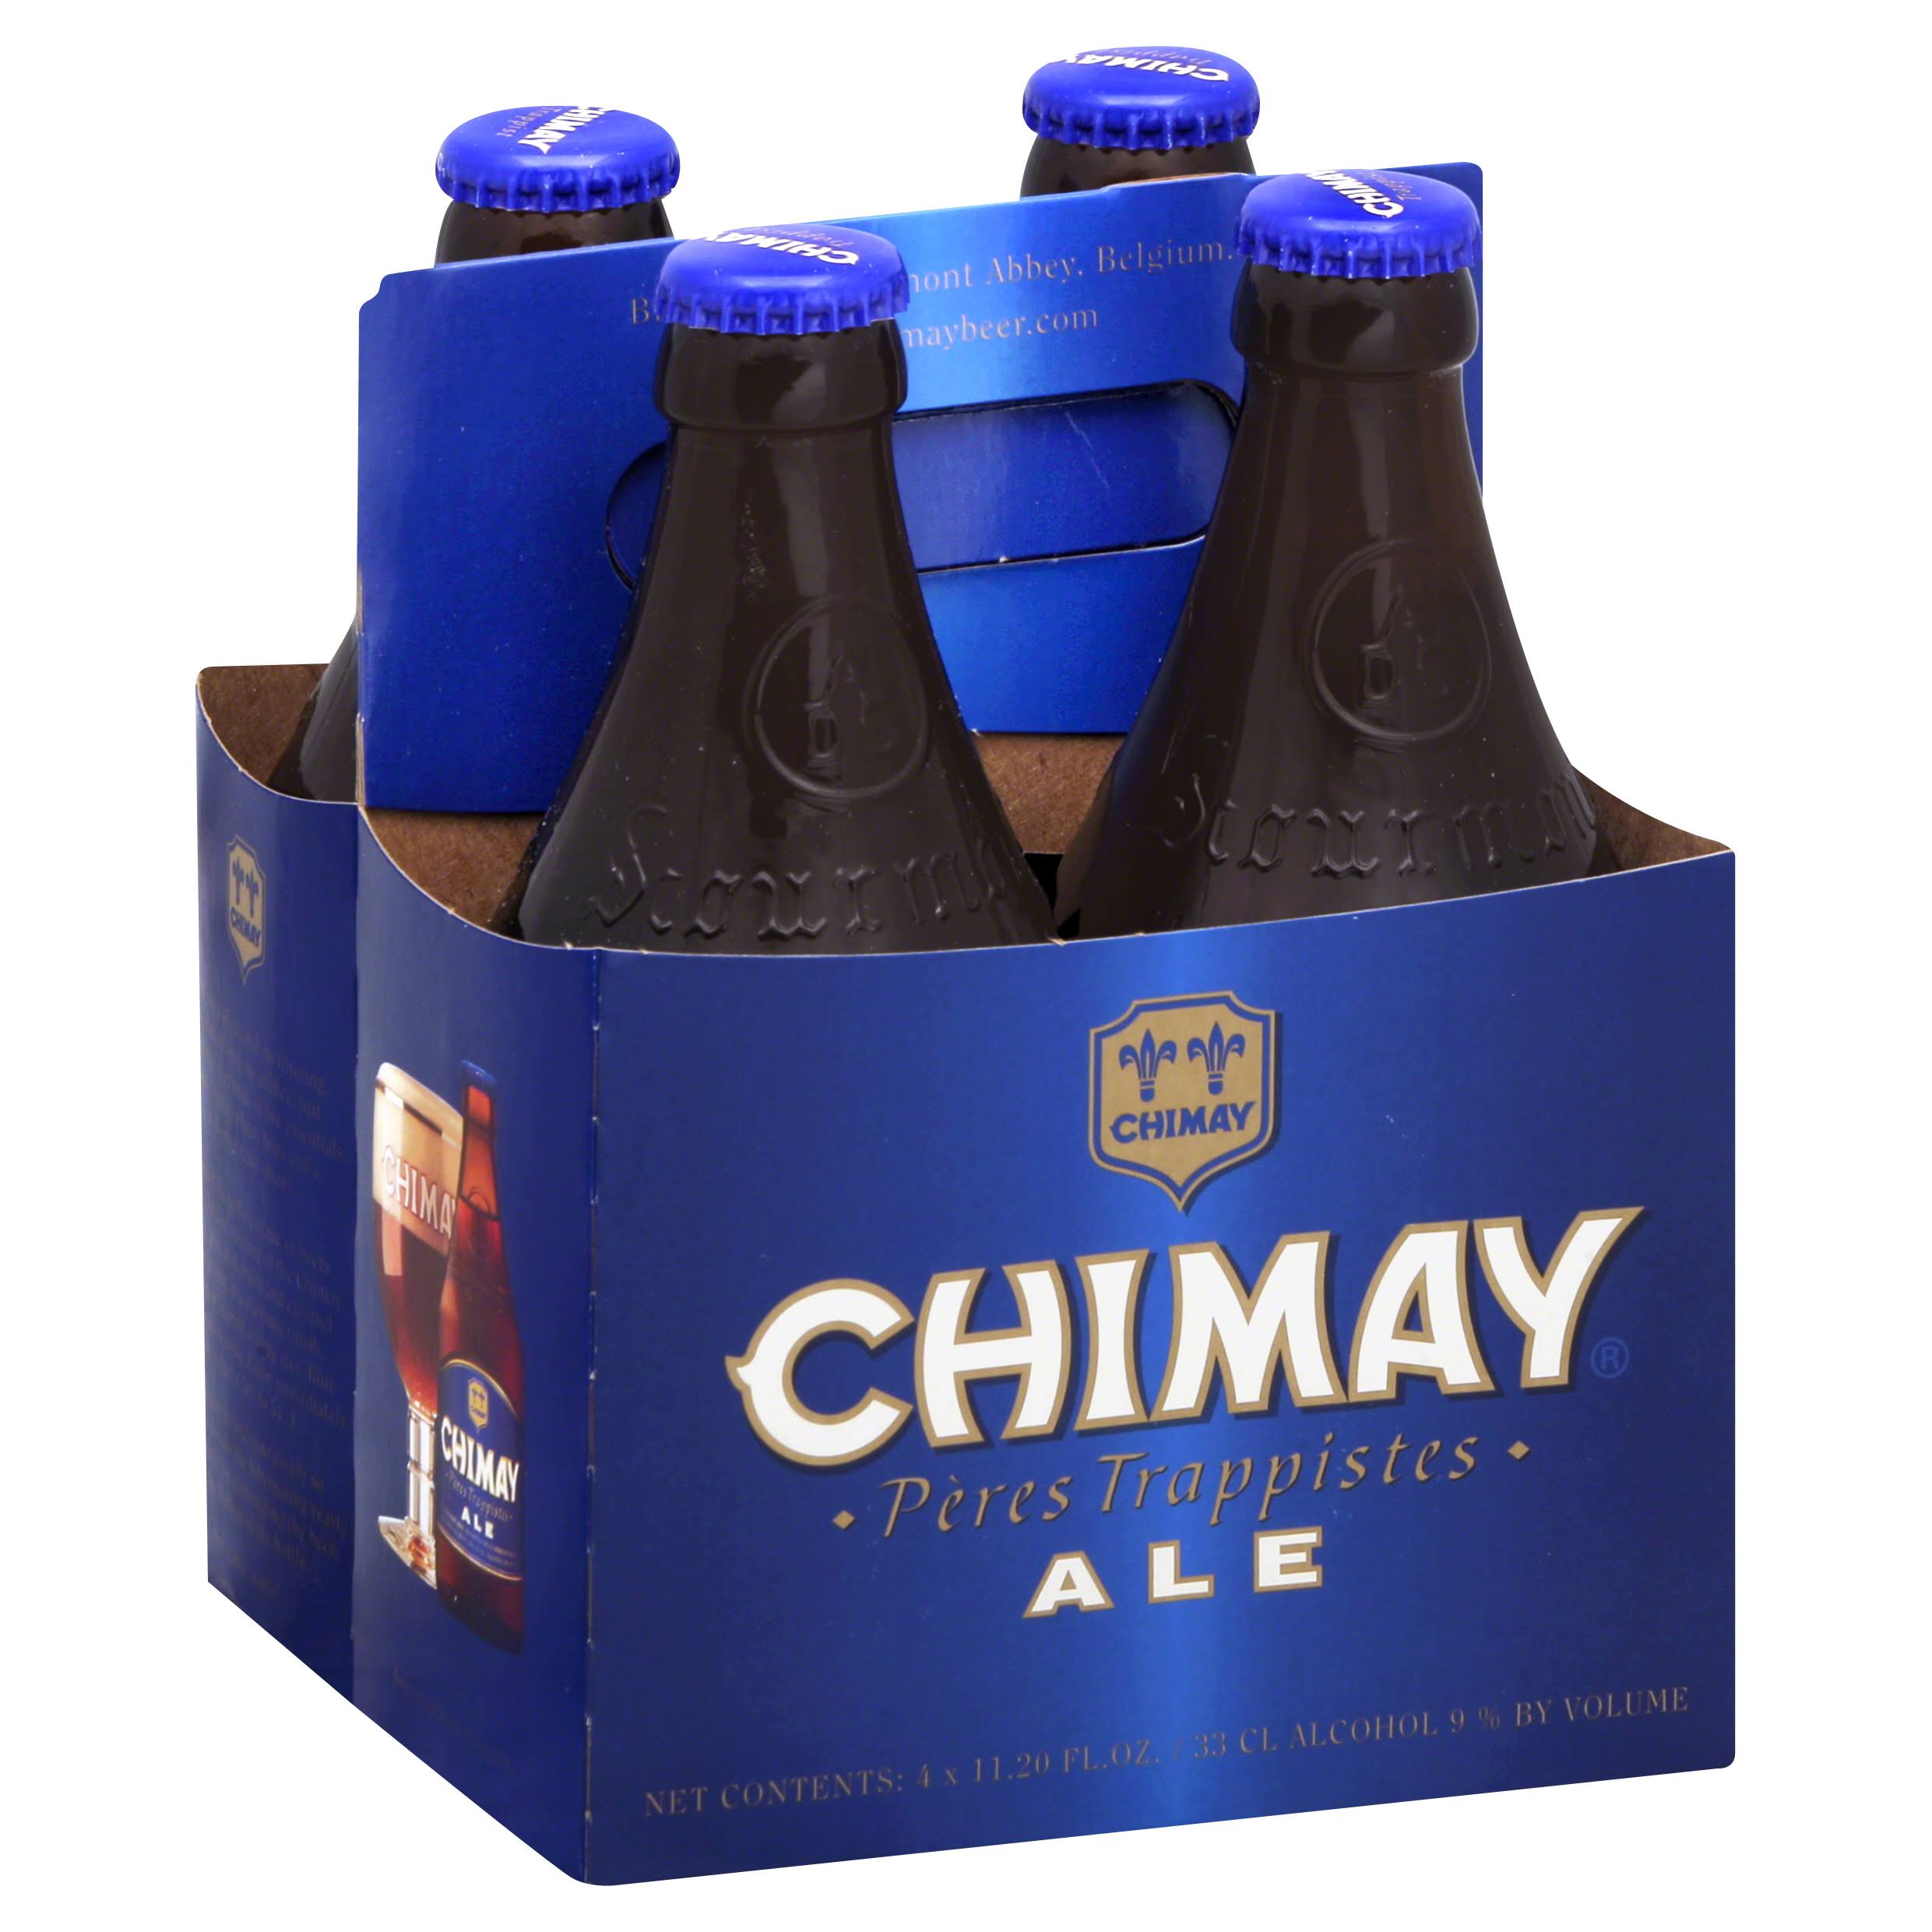 Chimay Ale - 4 pack, 11.20 fl oz bottles